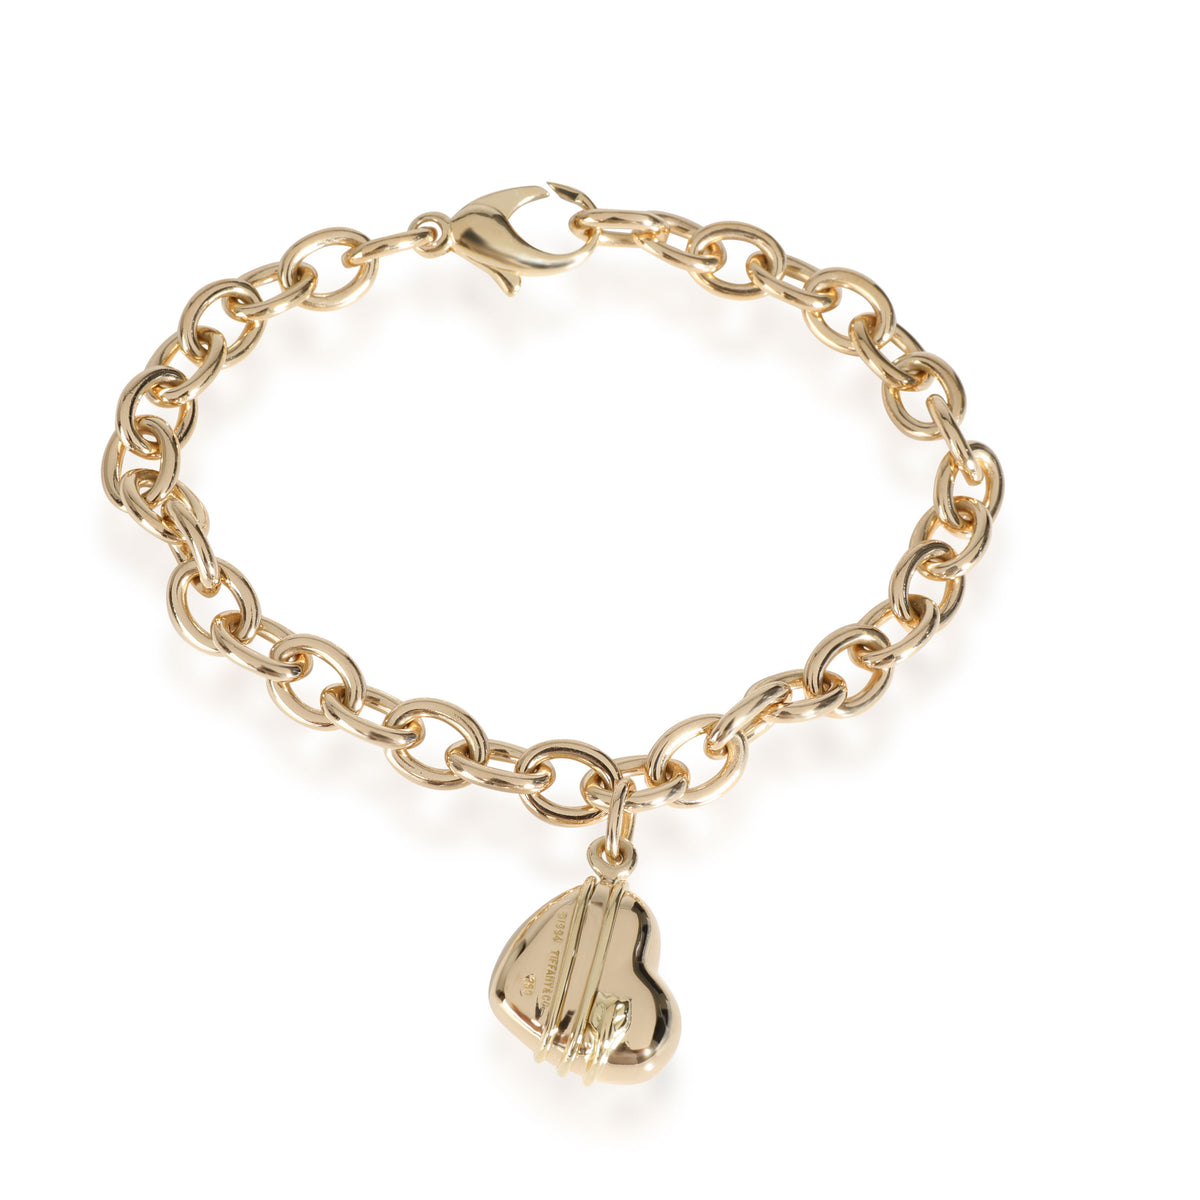 Tiffany & Co. Cupid Heart Charm Bracelet in 18k Yellow Gold